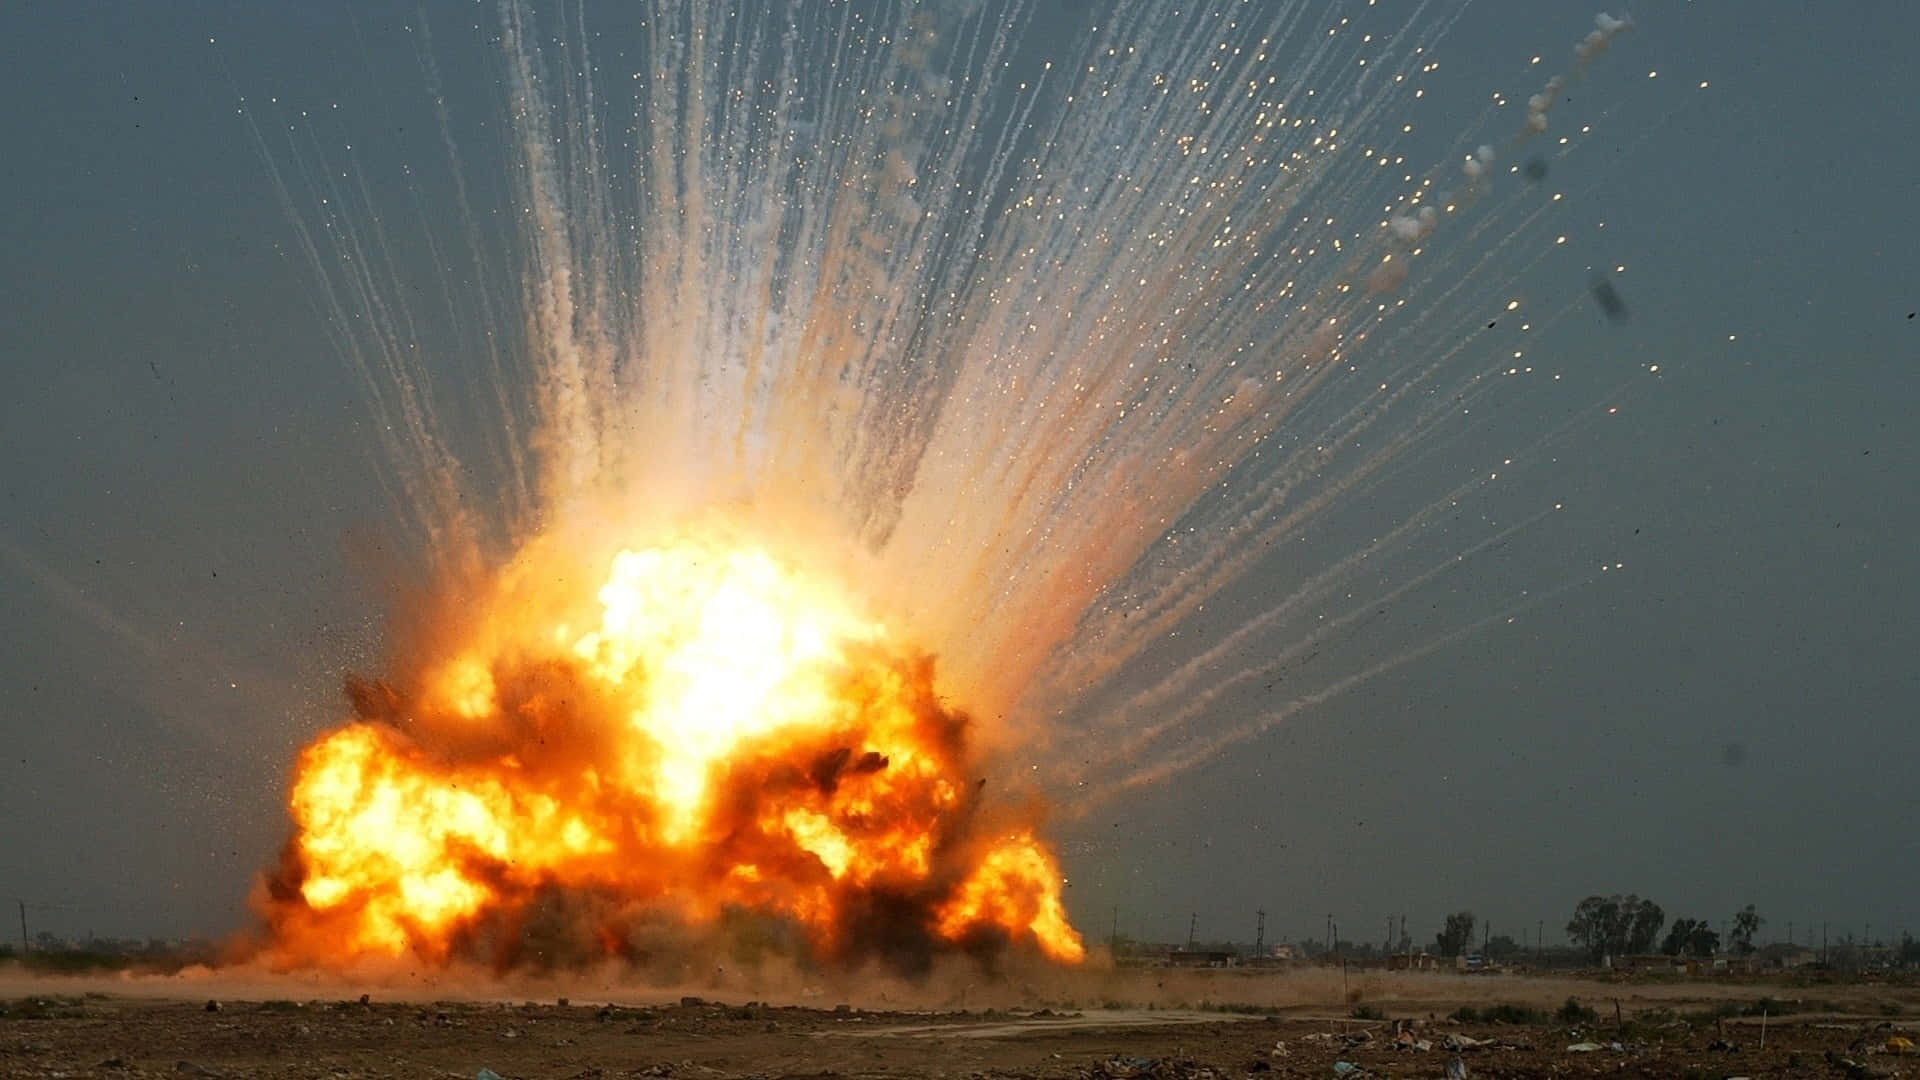 Fondode Pantalla Impresionante De Una Explosión Masiva De Bombas.